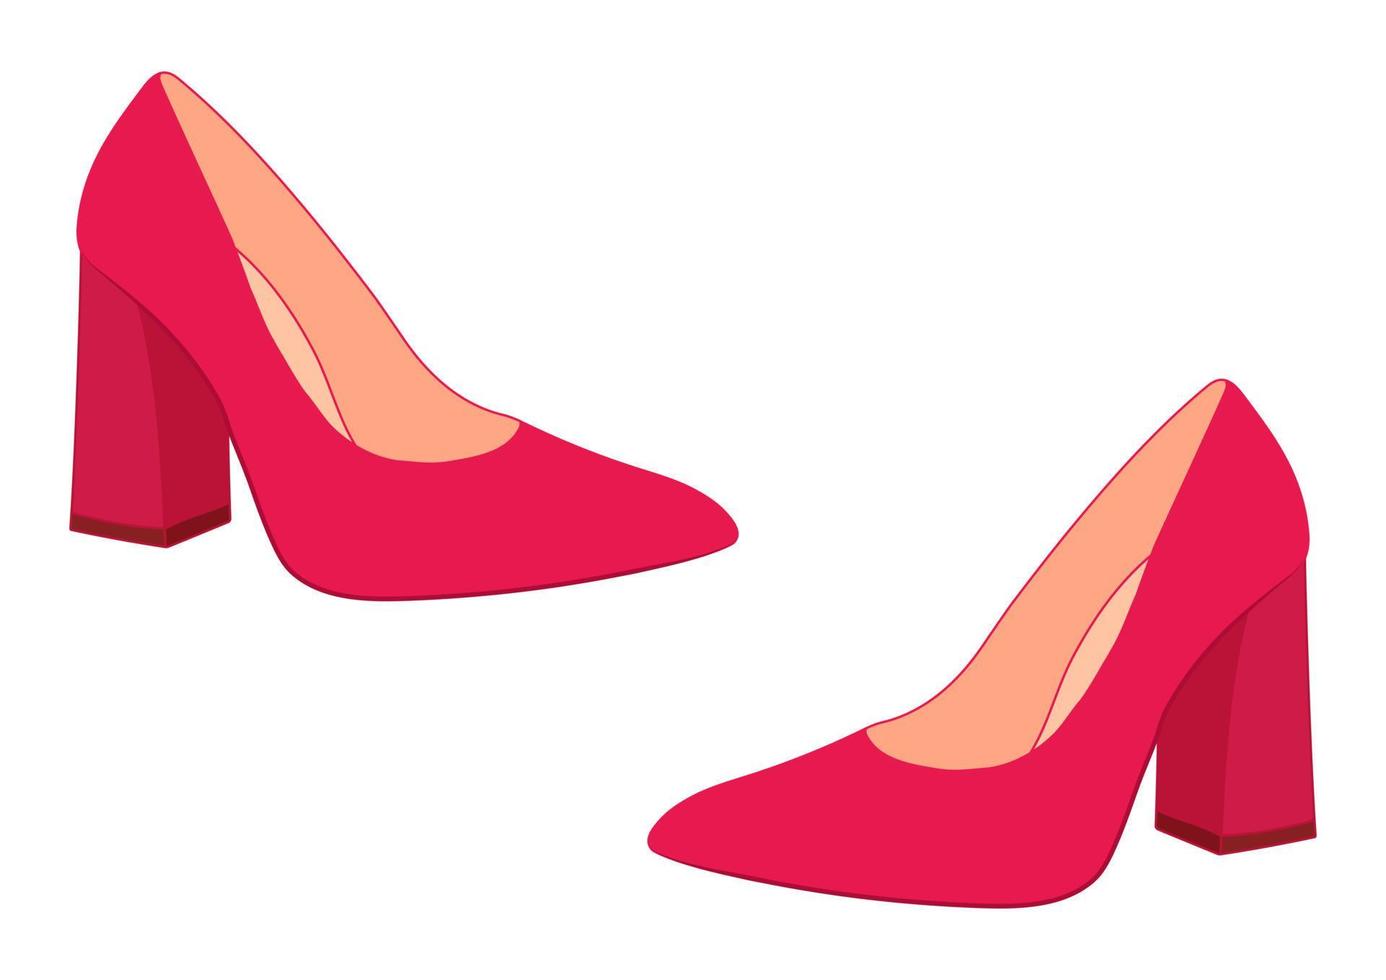 Chaussures Pour Femme Design Chic - Talon de Mode Couleur Assortie DUG00210  - Sodishop